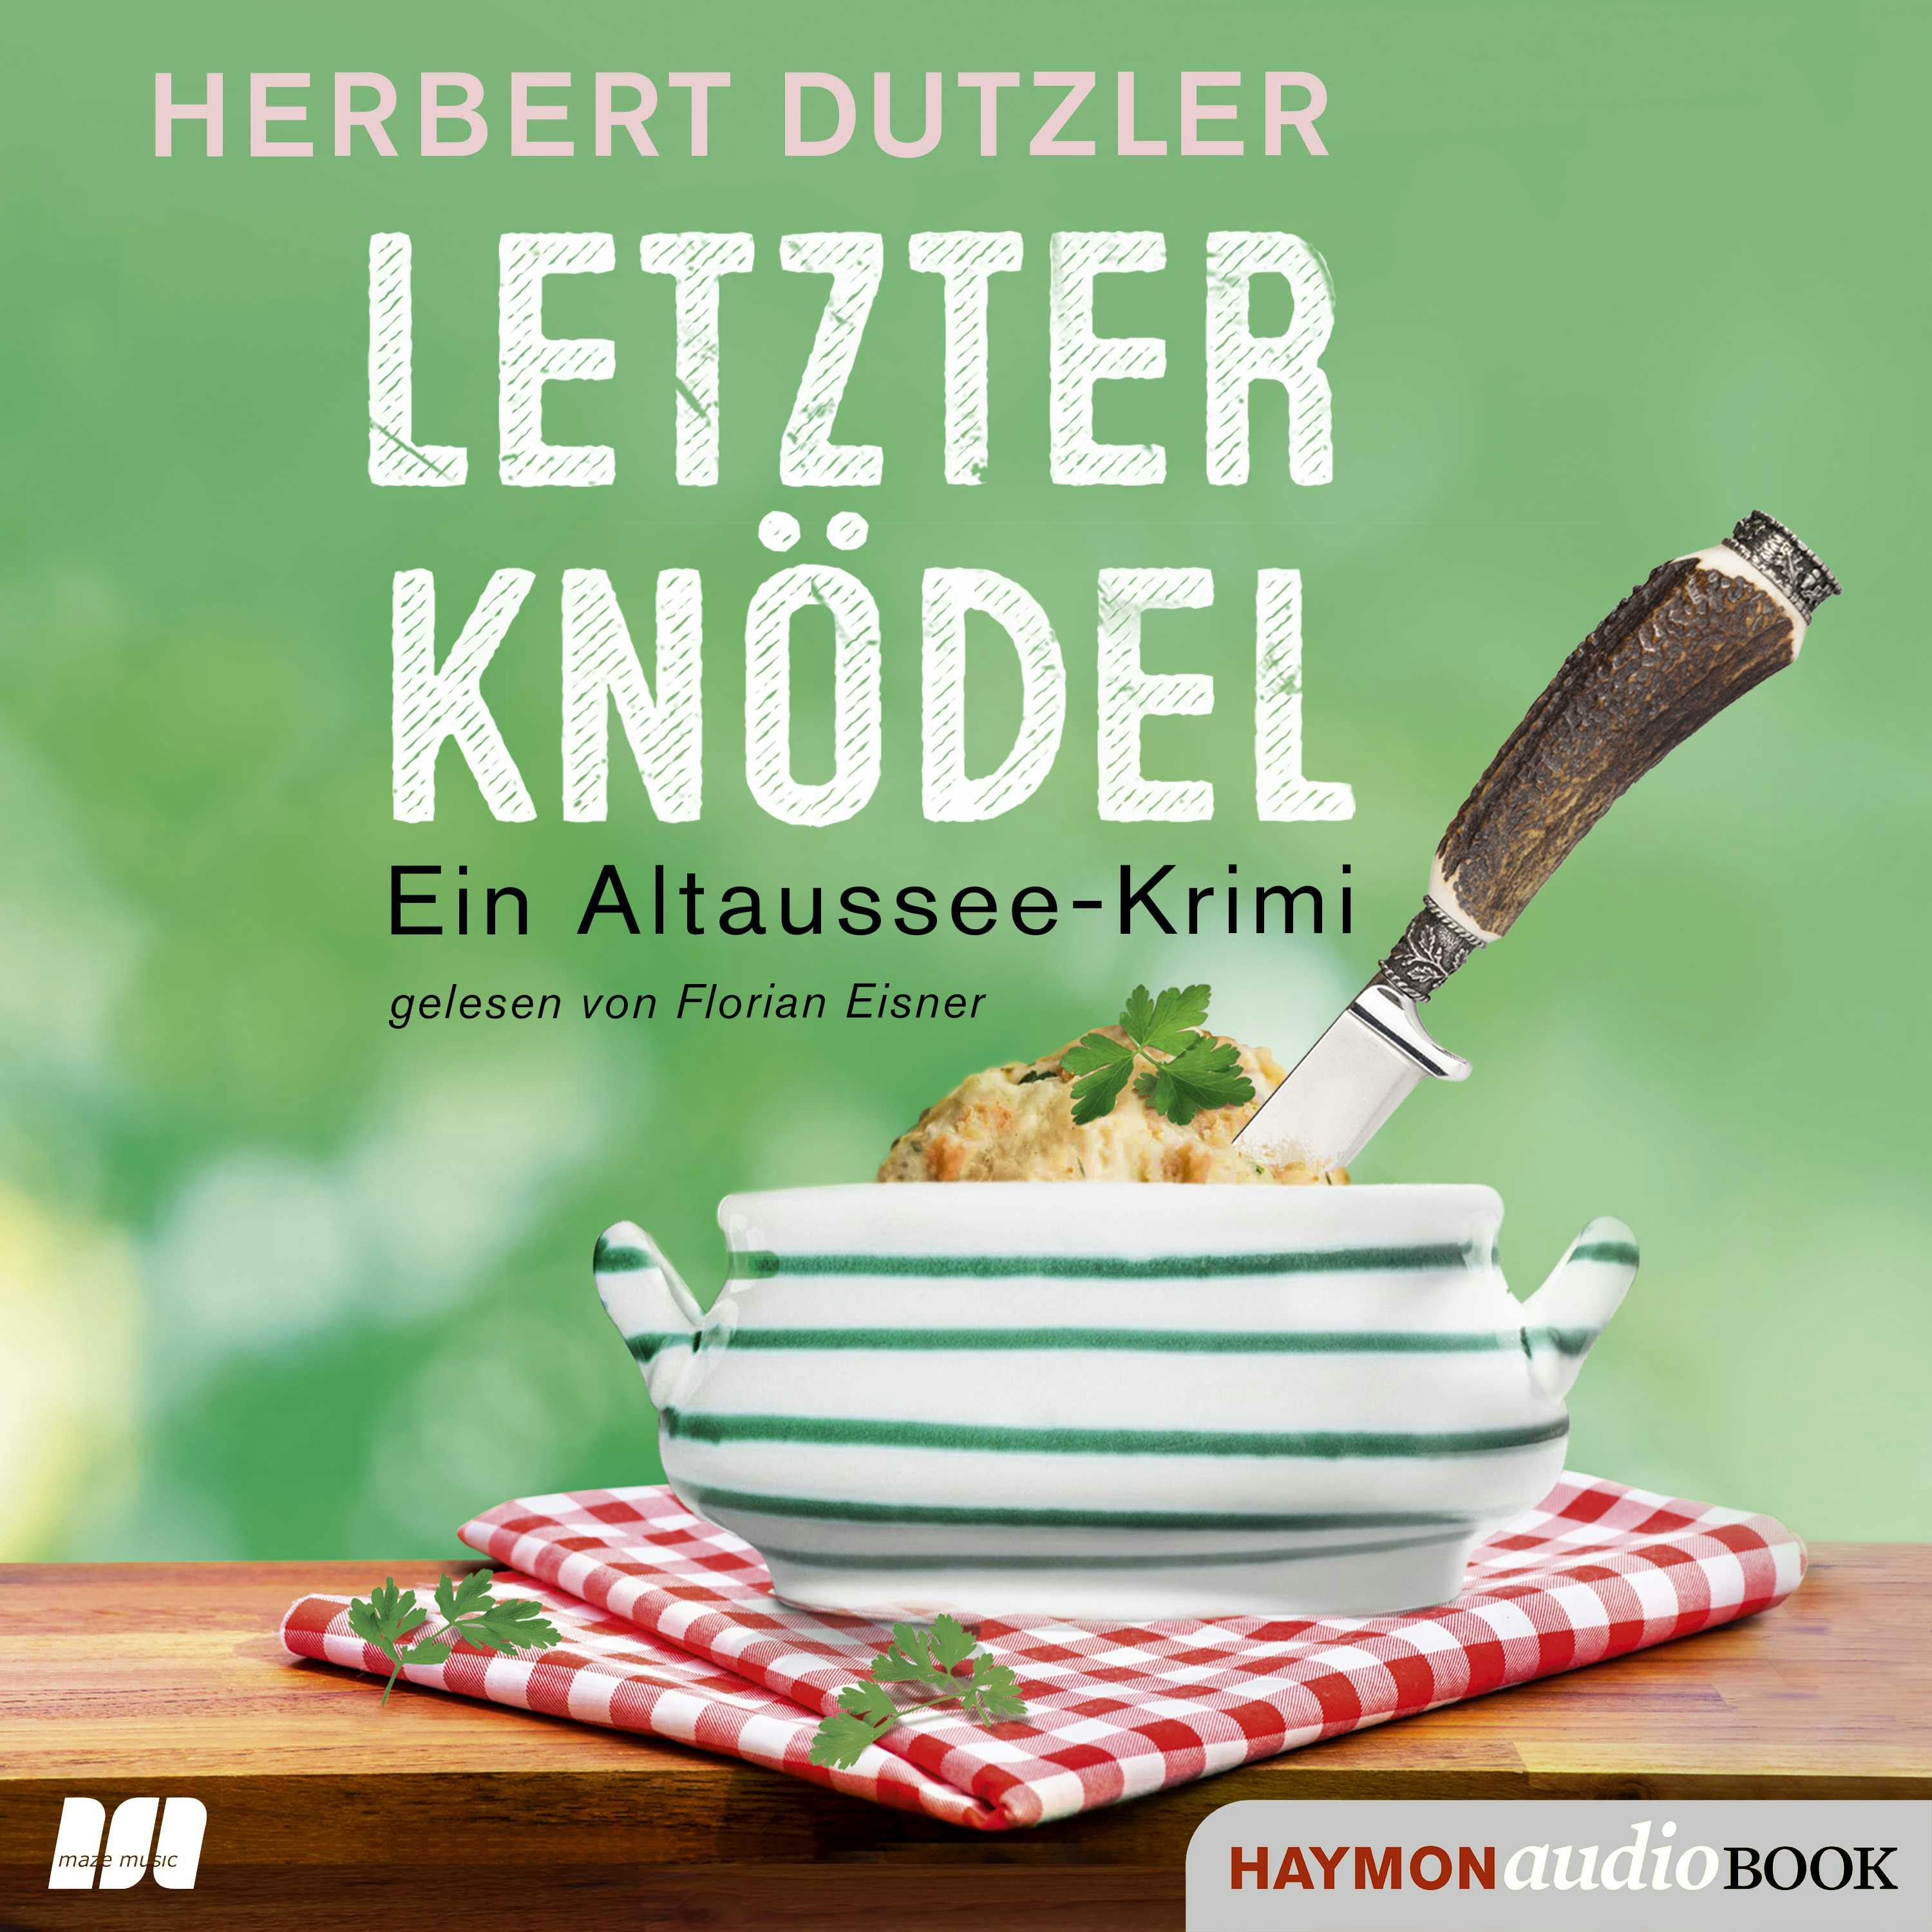 Letzter Knödel: Ein Altaussee-Krimi - Herbert Dutzler